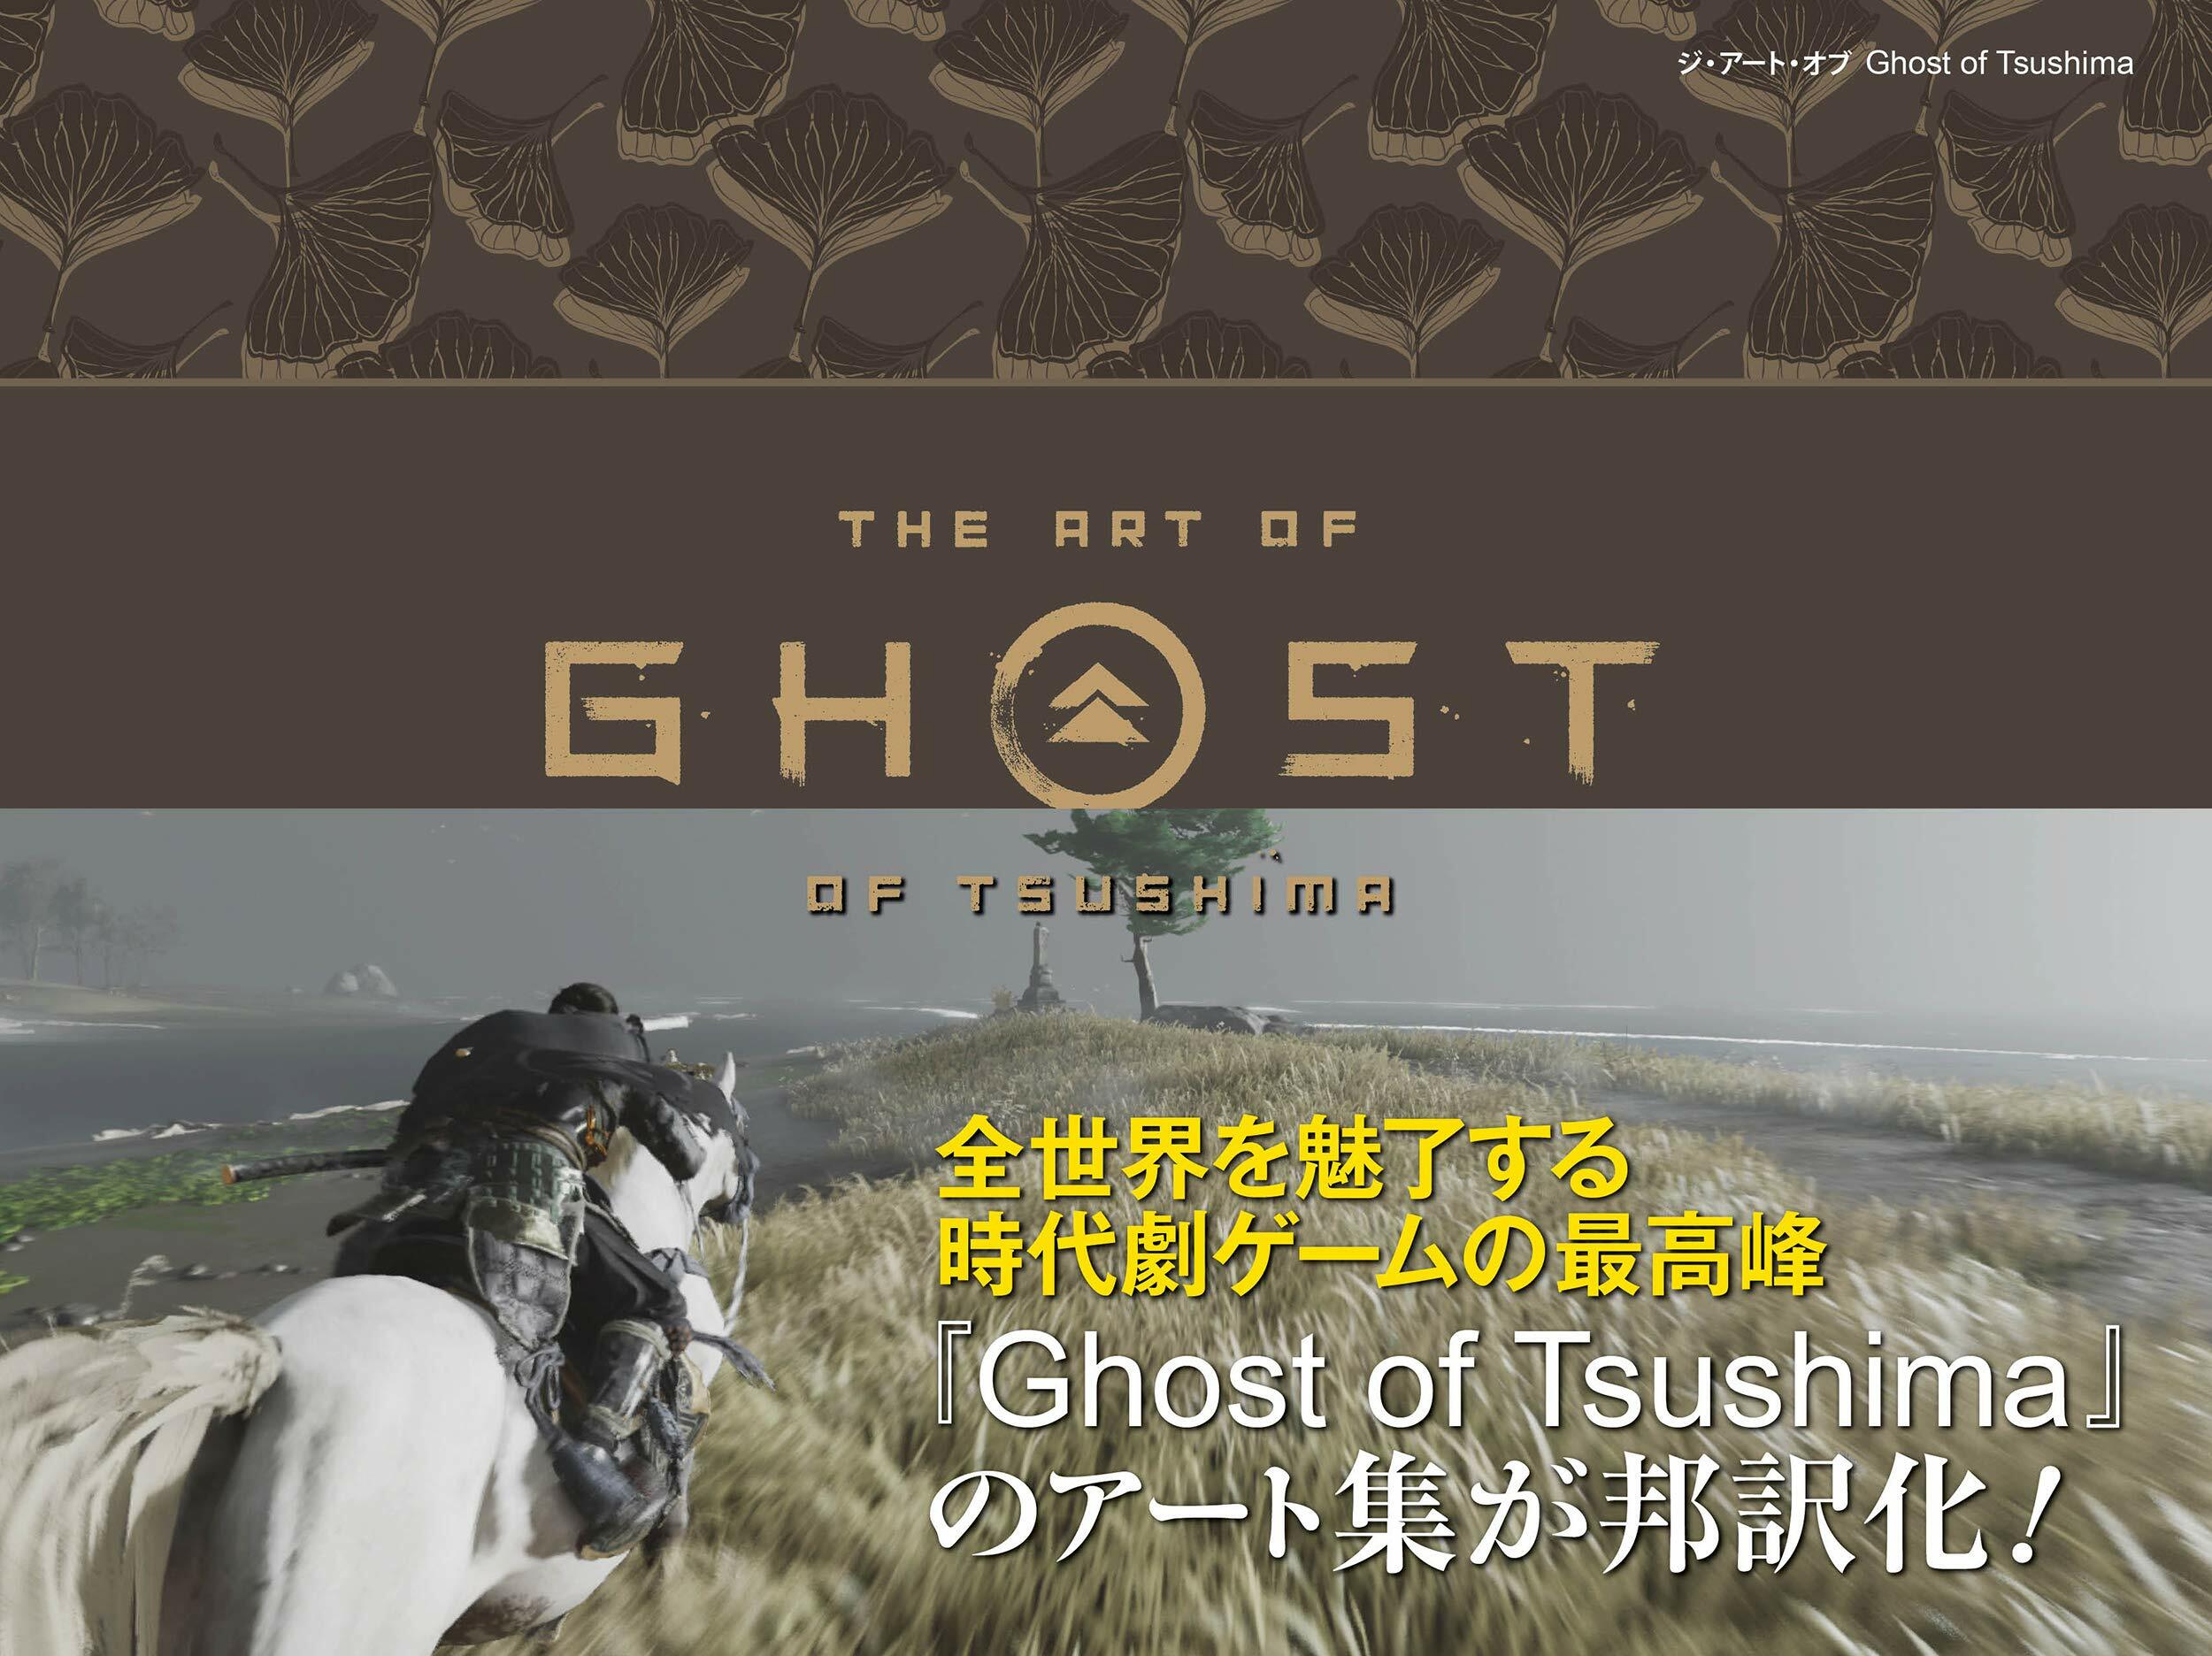 ジ·ア-ト·オブ Ghost of Tsushima (G-NOVELS)